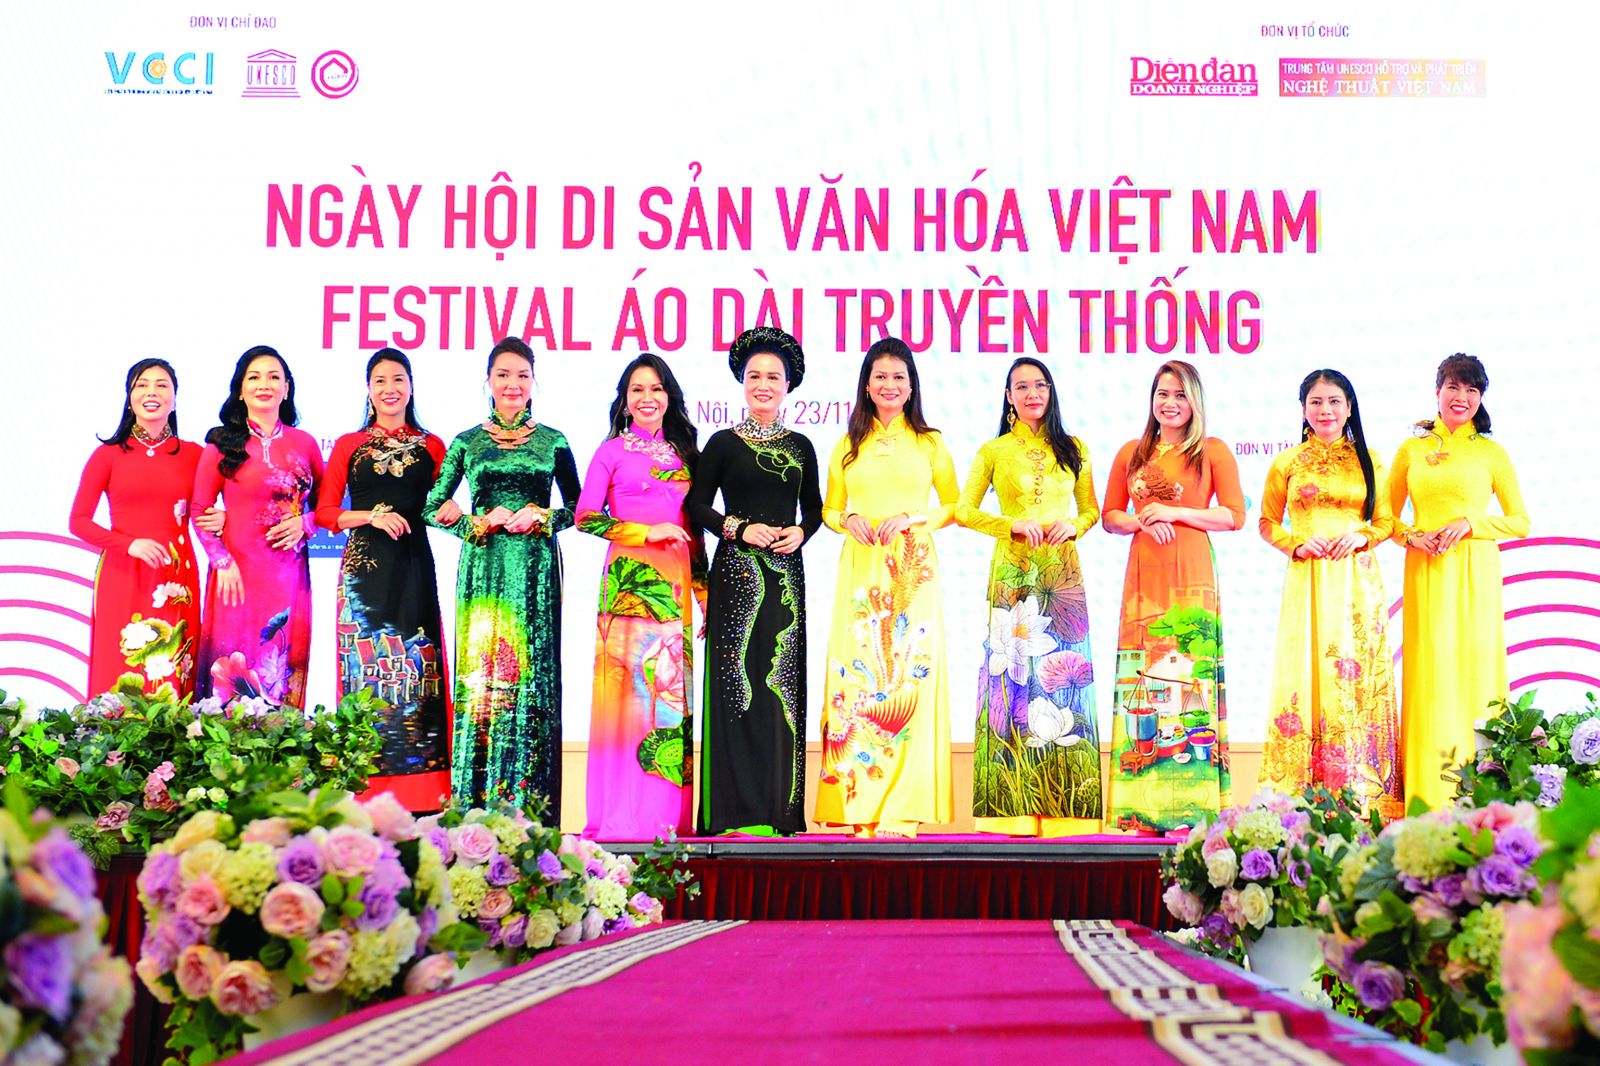  Nữ doanh nhân trình diễn áo trong khuôn khổ Diễn đàn Doanh nhân, Doanh nghiệp với bảo tồn và gìn giữ di sản văn hóa Việt Nam do Tạp chí Diễn đàn Doanh nghiệp và Trung tâm UNESCO hỗ trợ và phát triển nghệ thuật Việt Nam tổ chức.